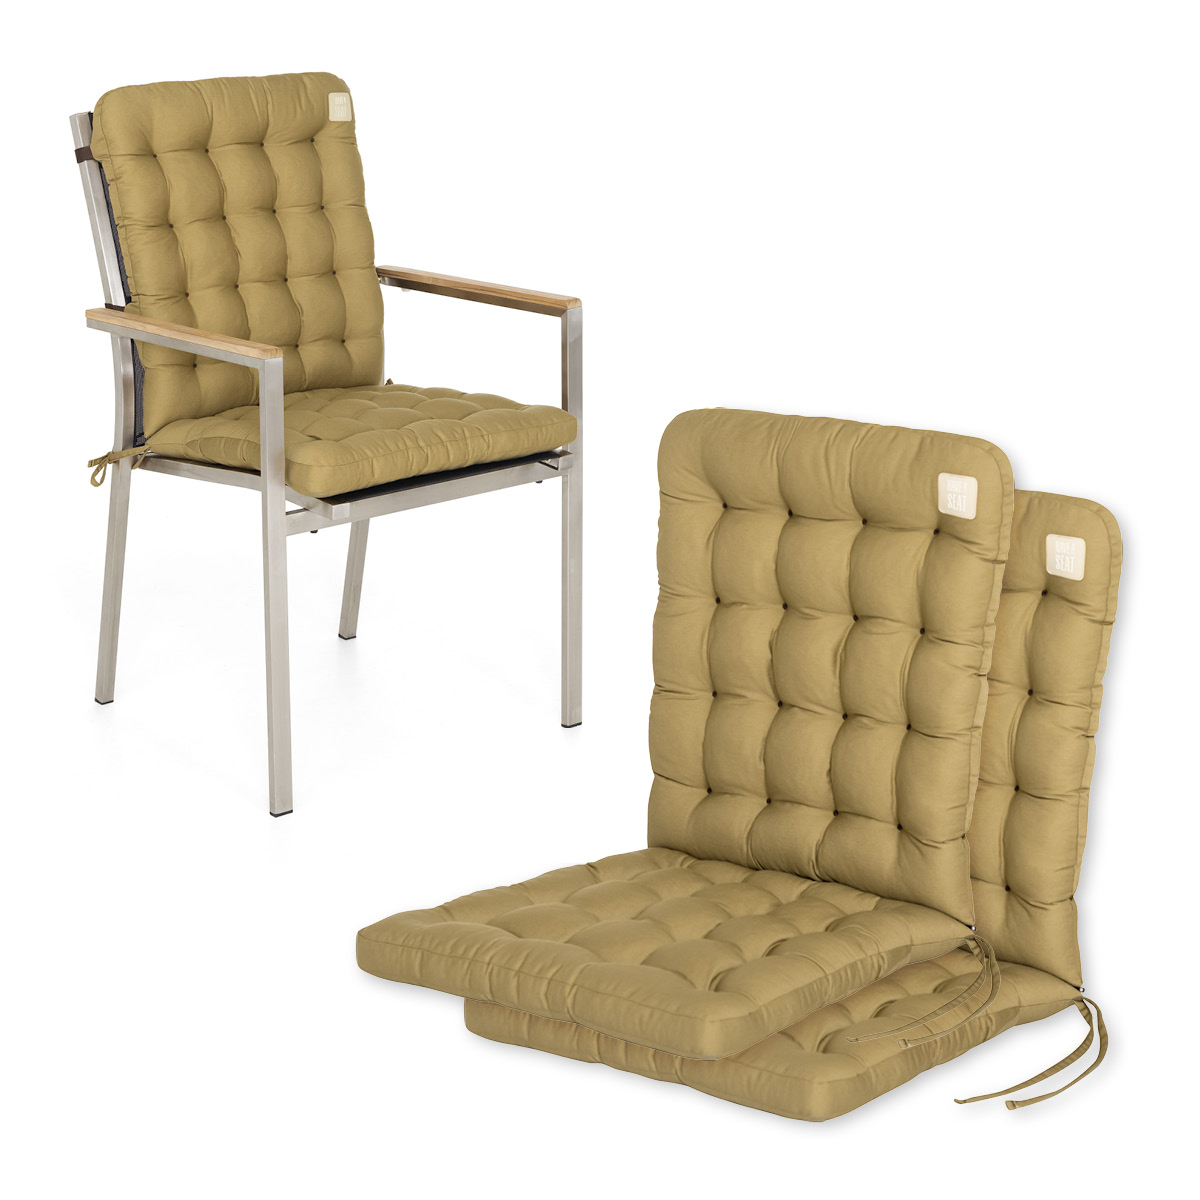 Niedriglehner Auflagen beige | 1 St. | bequemes Sitzpolster, orthopädische gepolsterte Sitzauflage für Stapelstühle / Gartenstühle | HAVE A SEAT Living